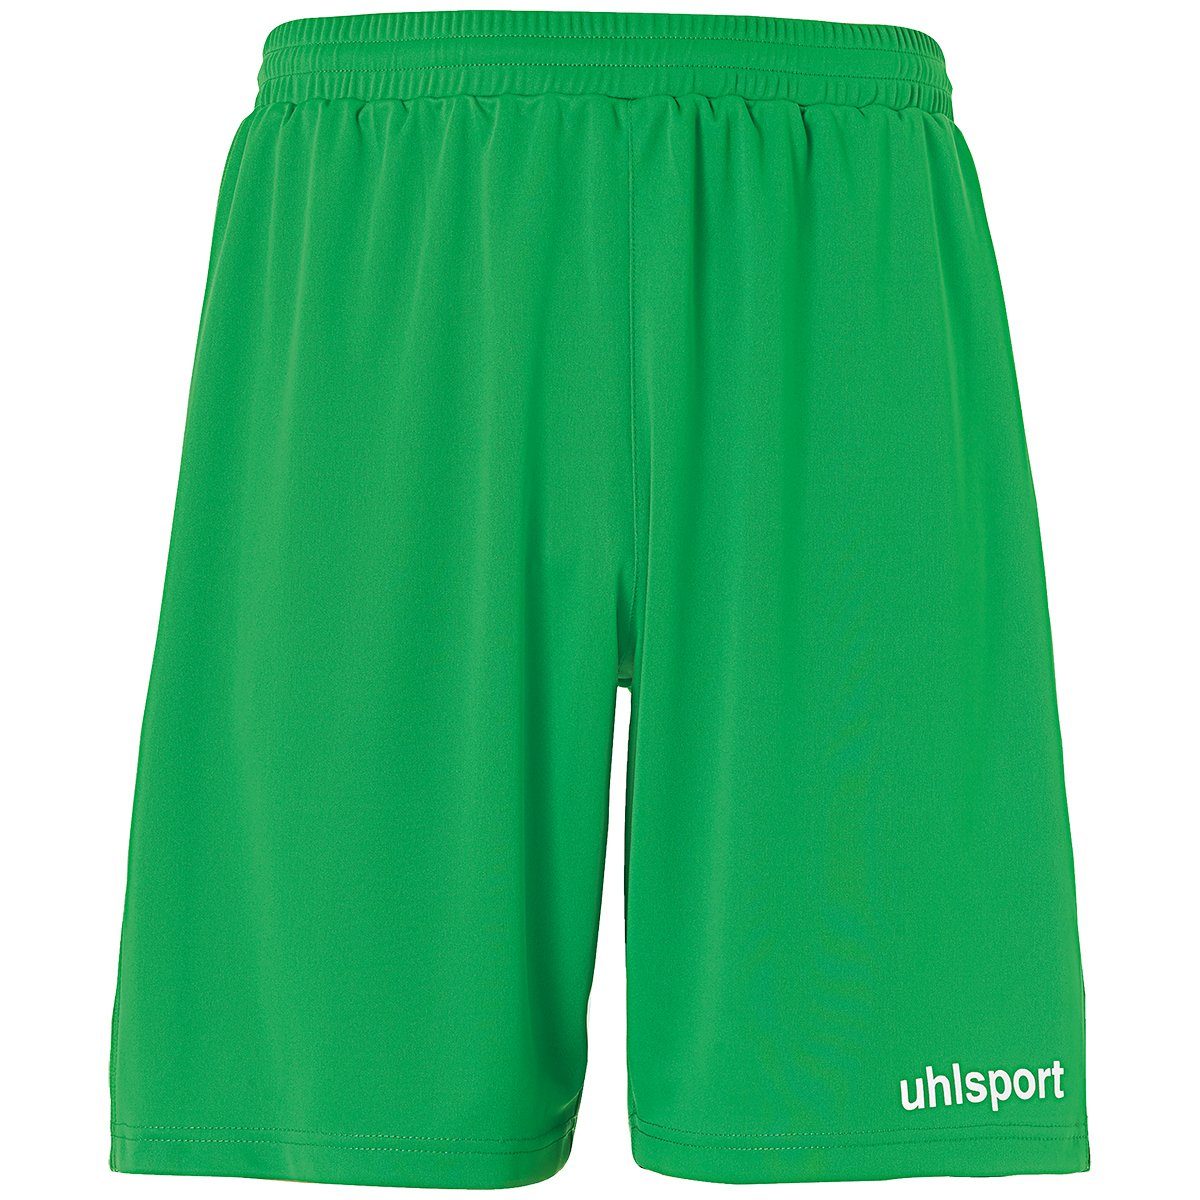 uhlsport Shorts uhlsport Shorts PERFORMANCE SHORTS grün/weiß